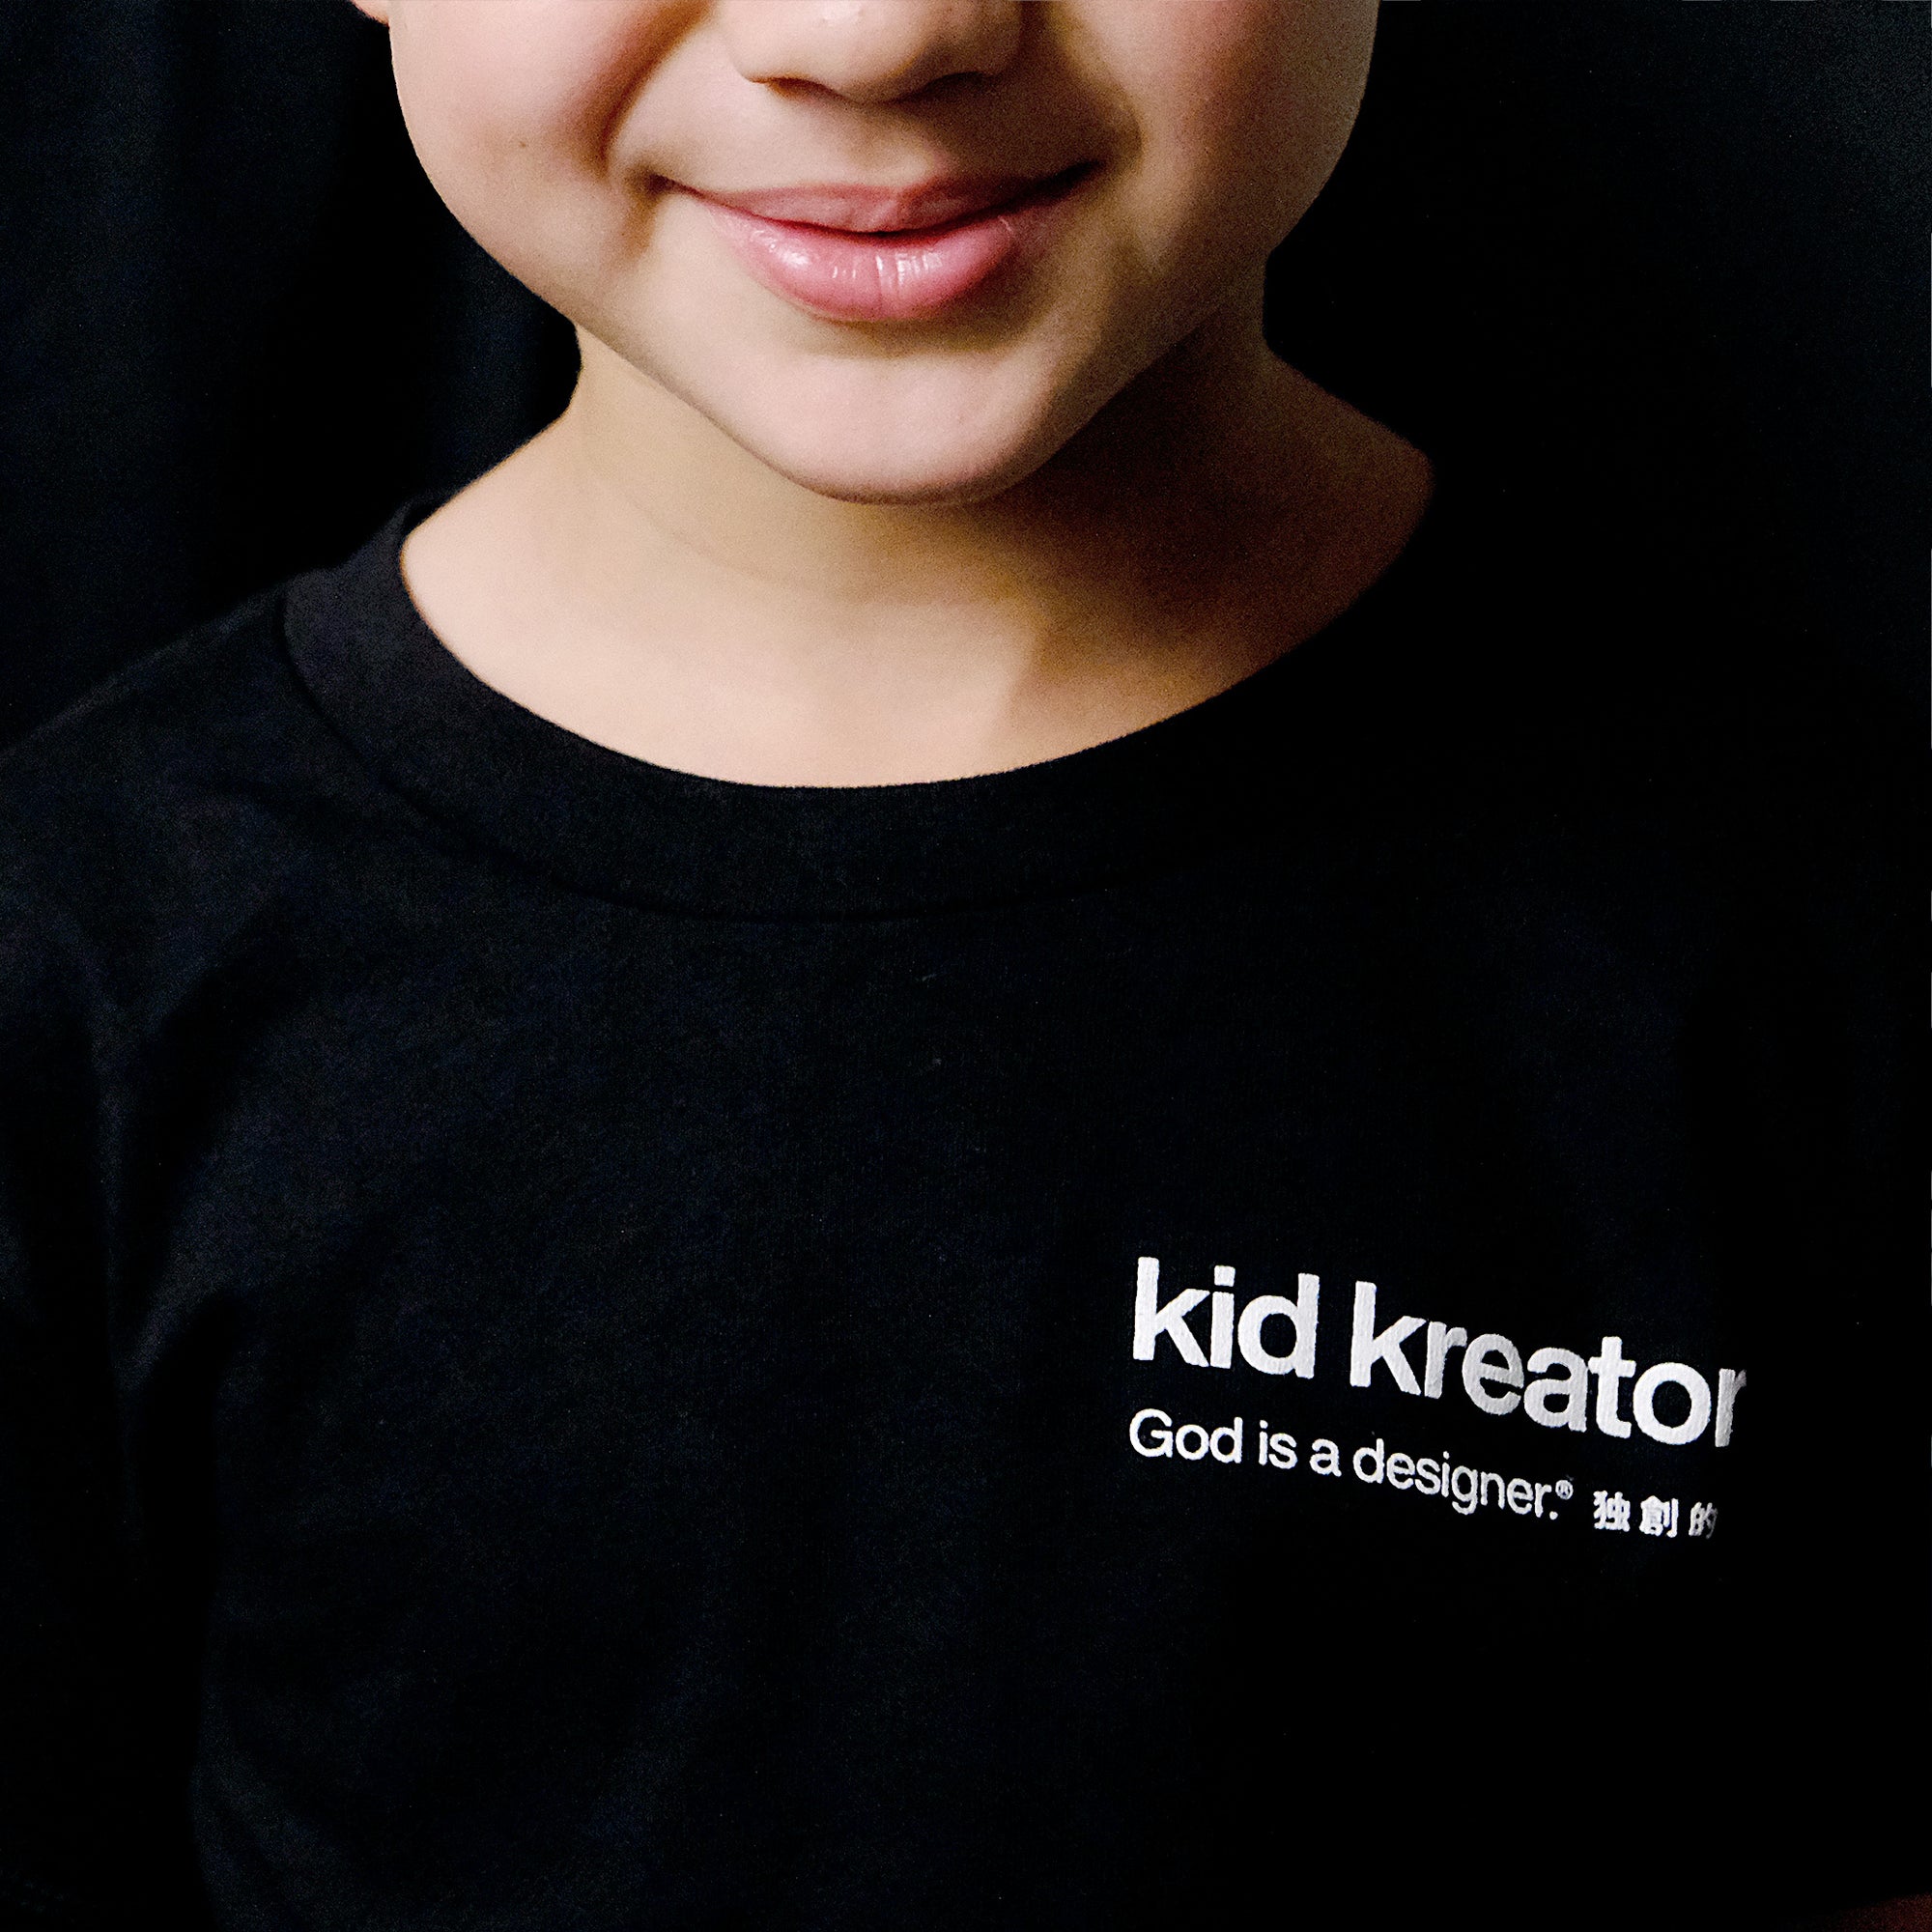 Kid Kreator Toddler SS [Black] - God is a designer.®